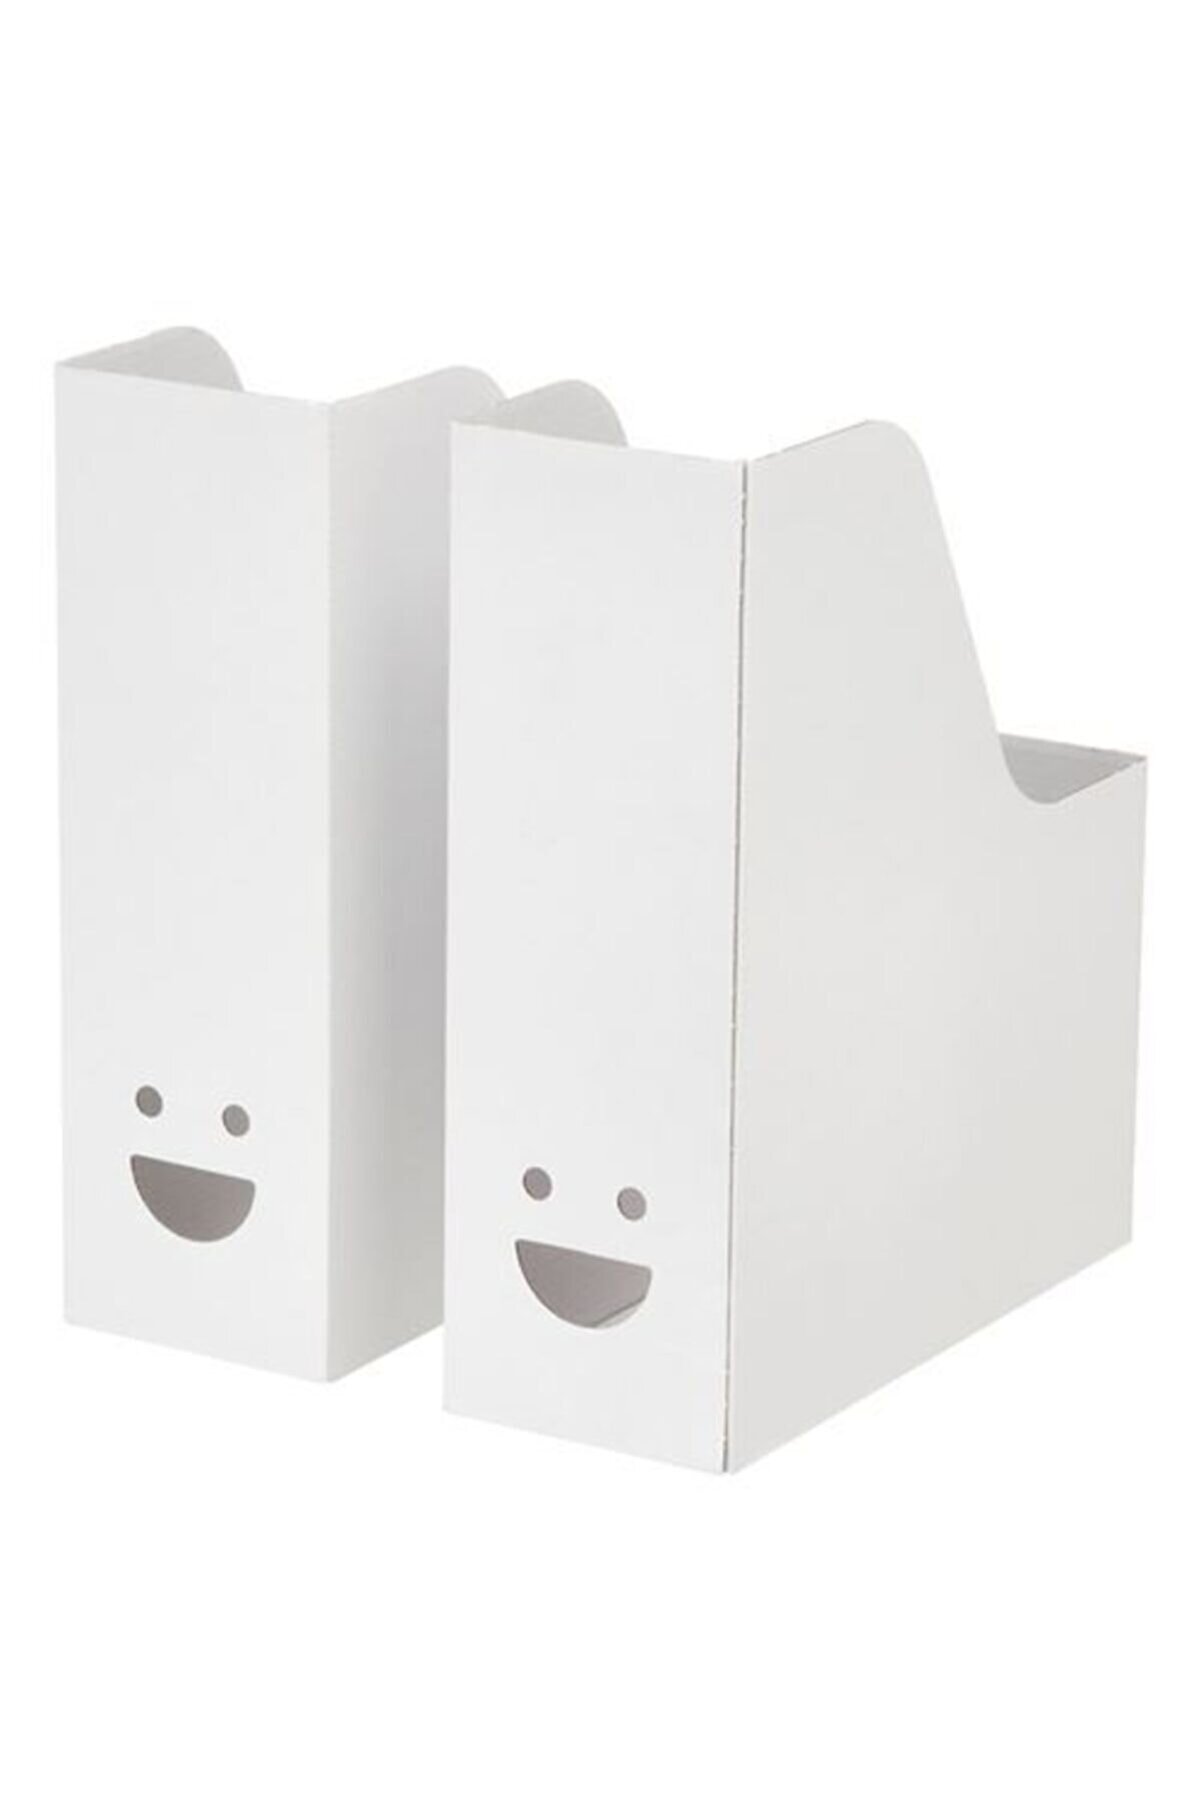 IKEA 2 Li Dosyalık Meridyendukkan Beyaz Renk Oluklu Karton Dosyalık